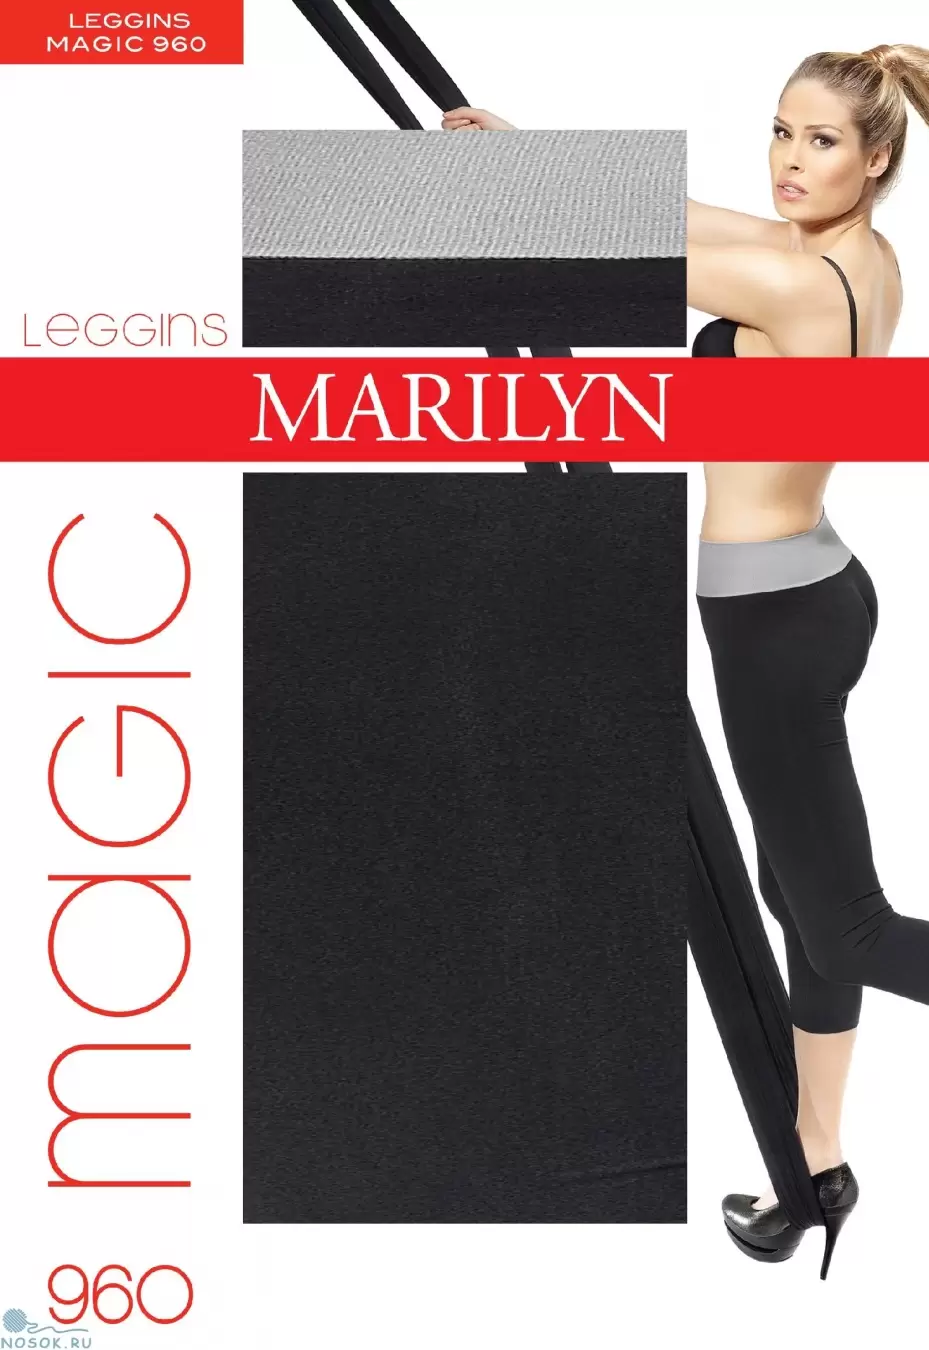 Marilyn Magic 960, леггинсы (изображение 1)